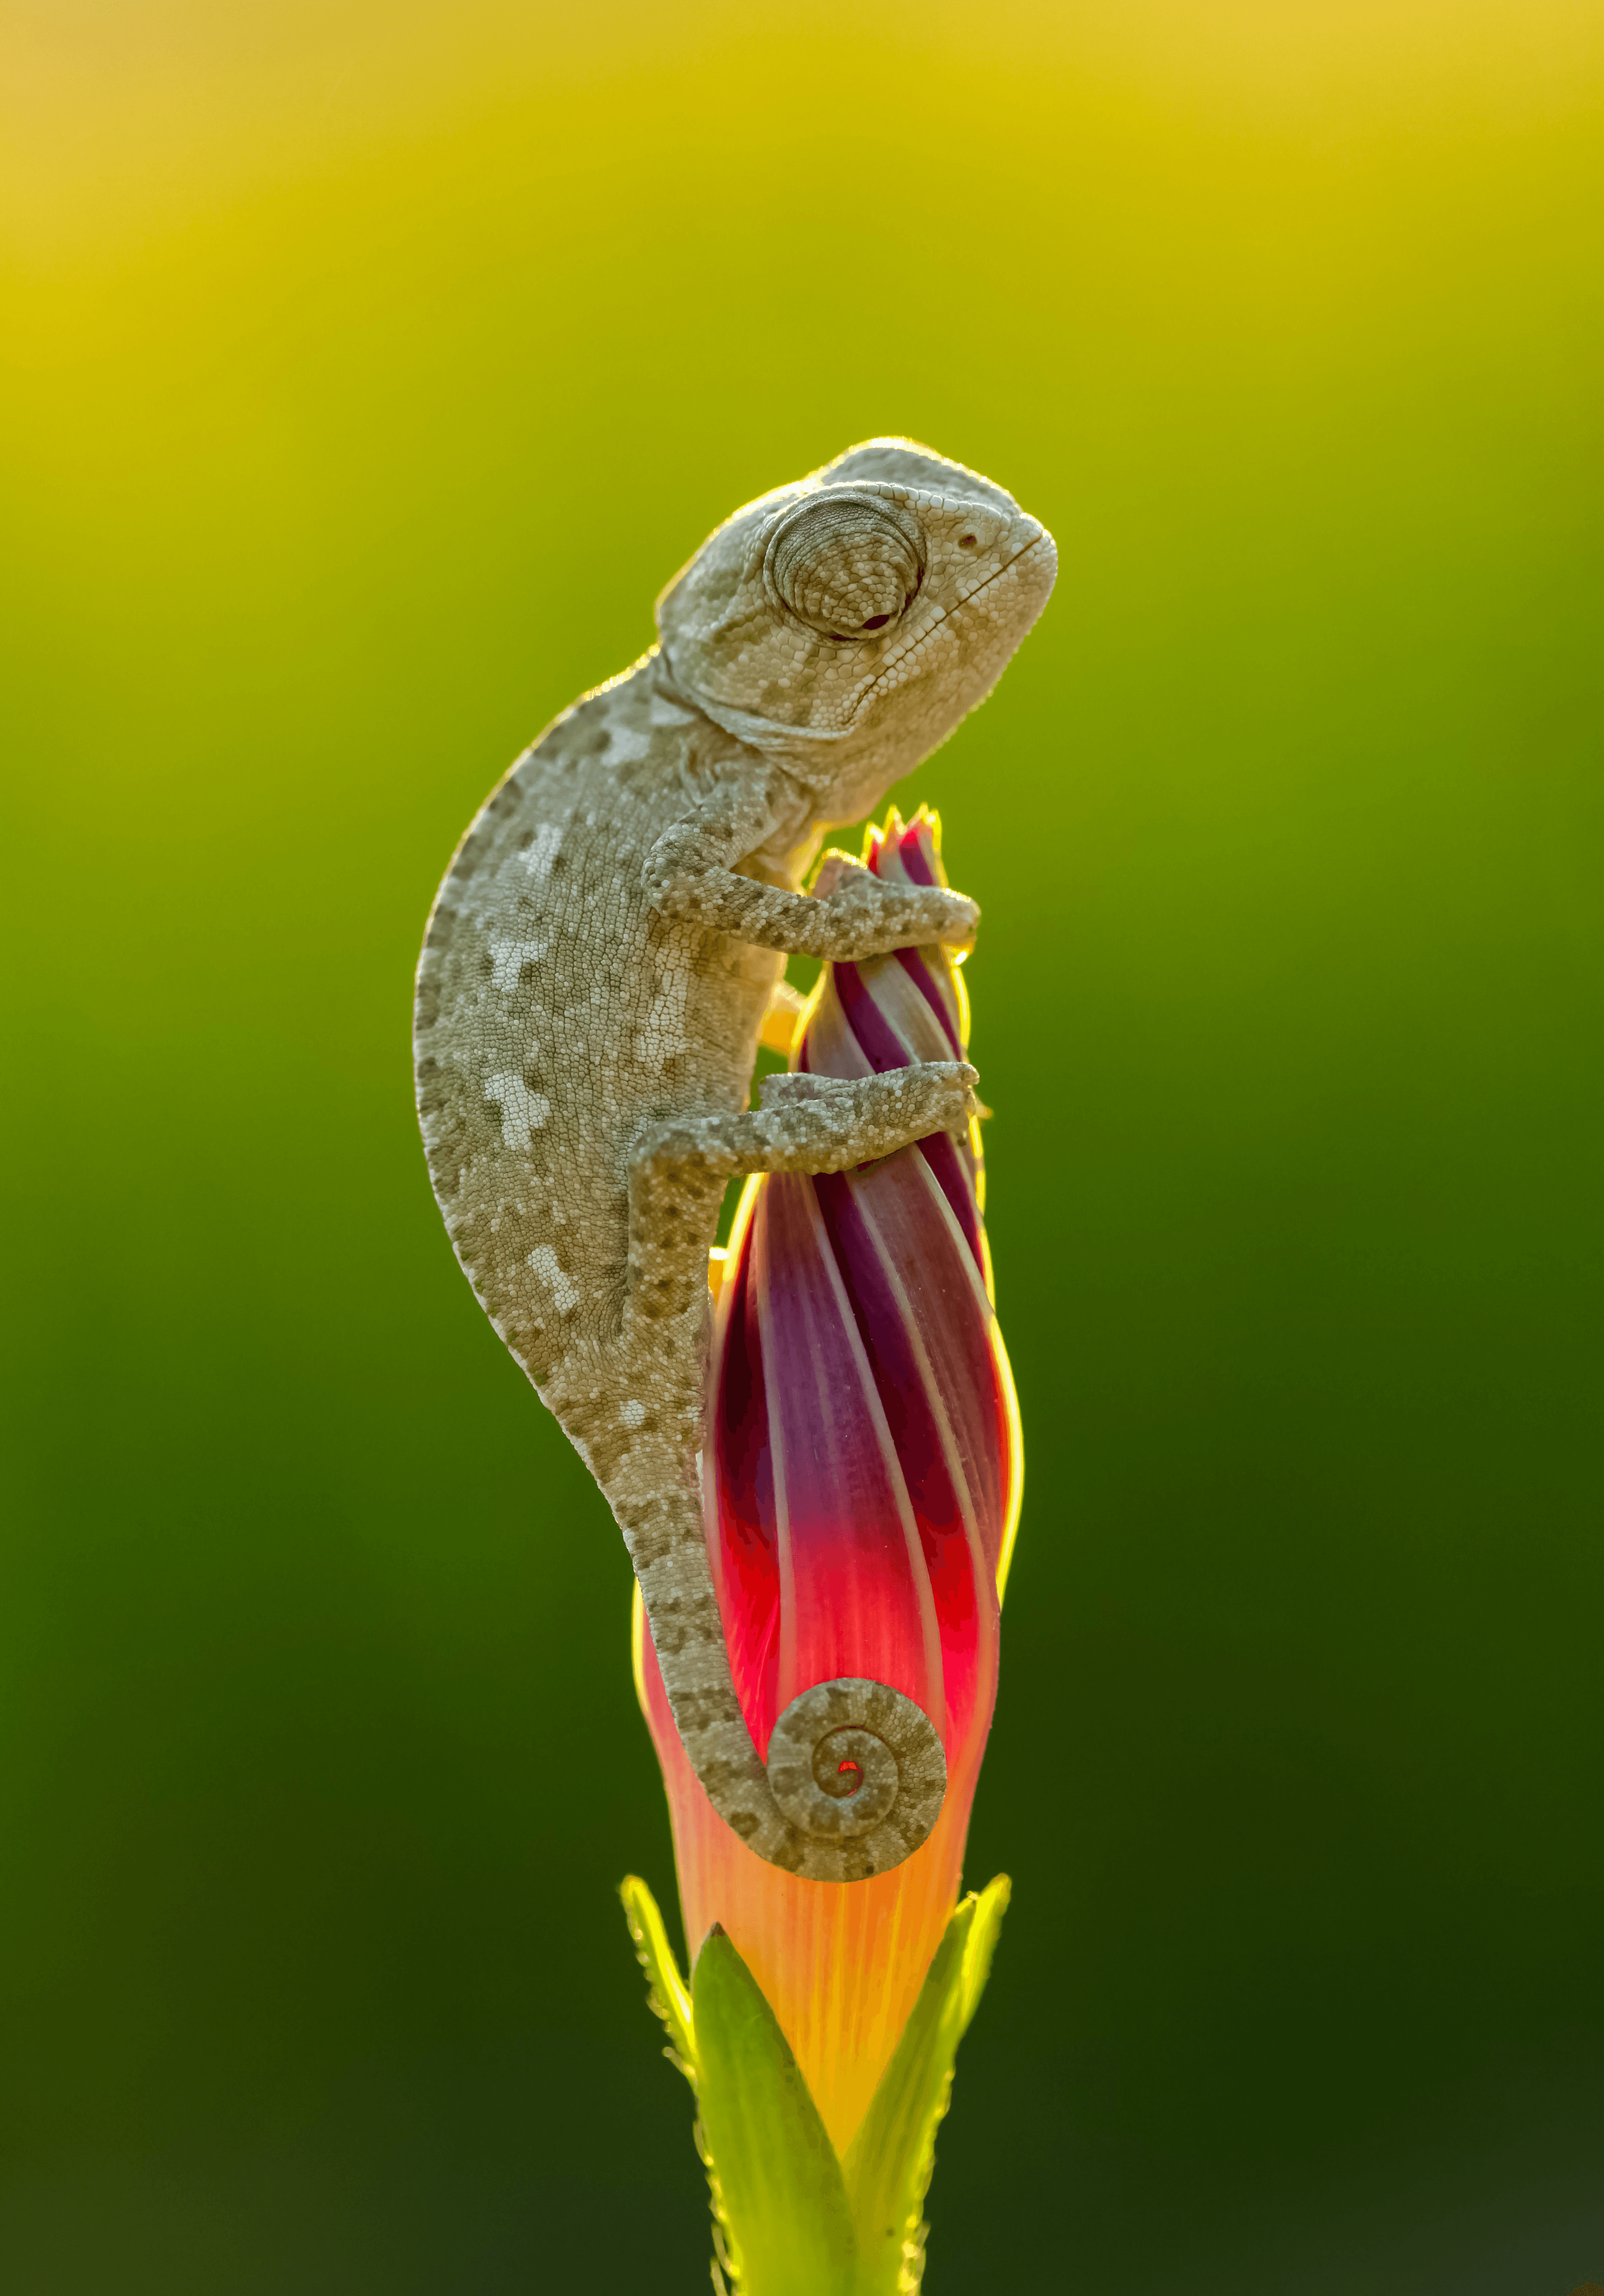 tiny chameleon on a flower